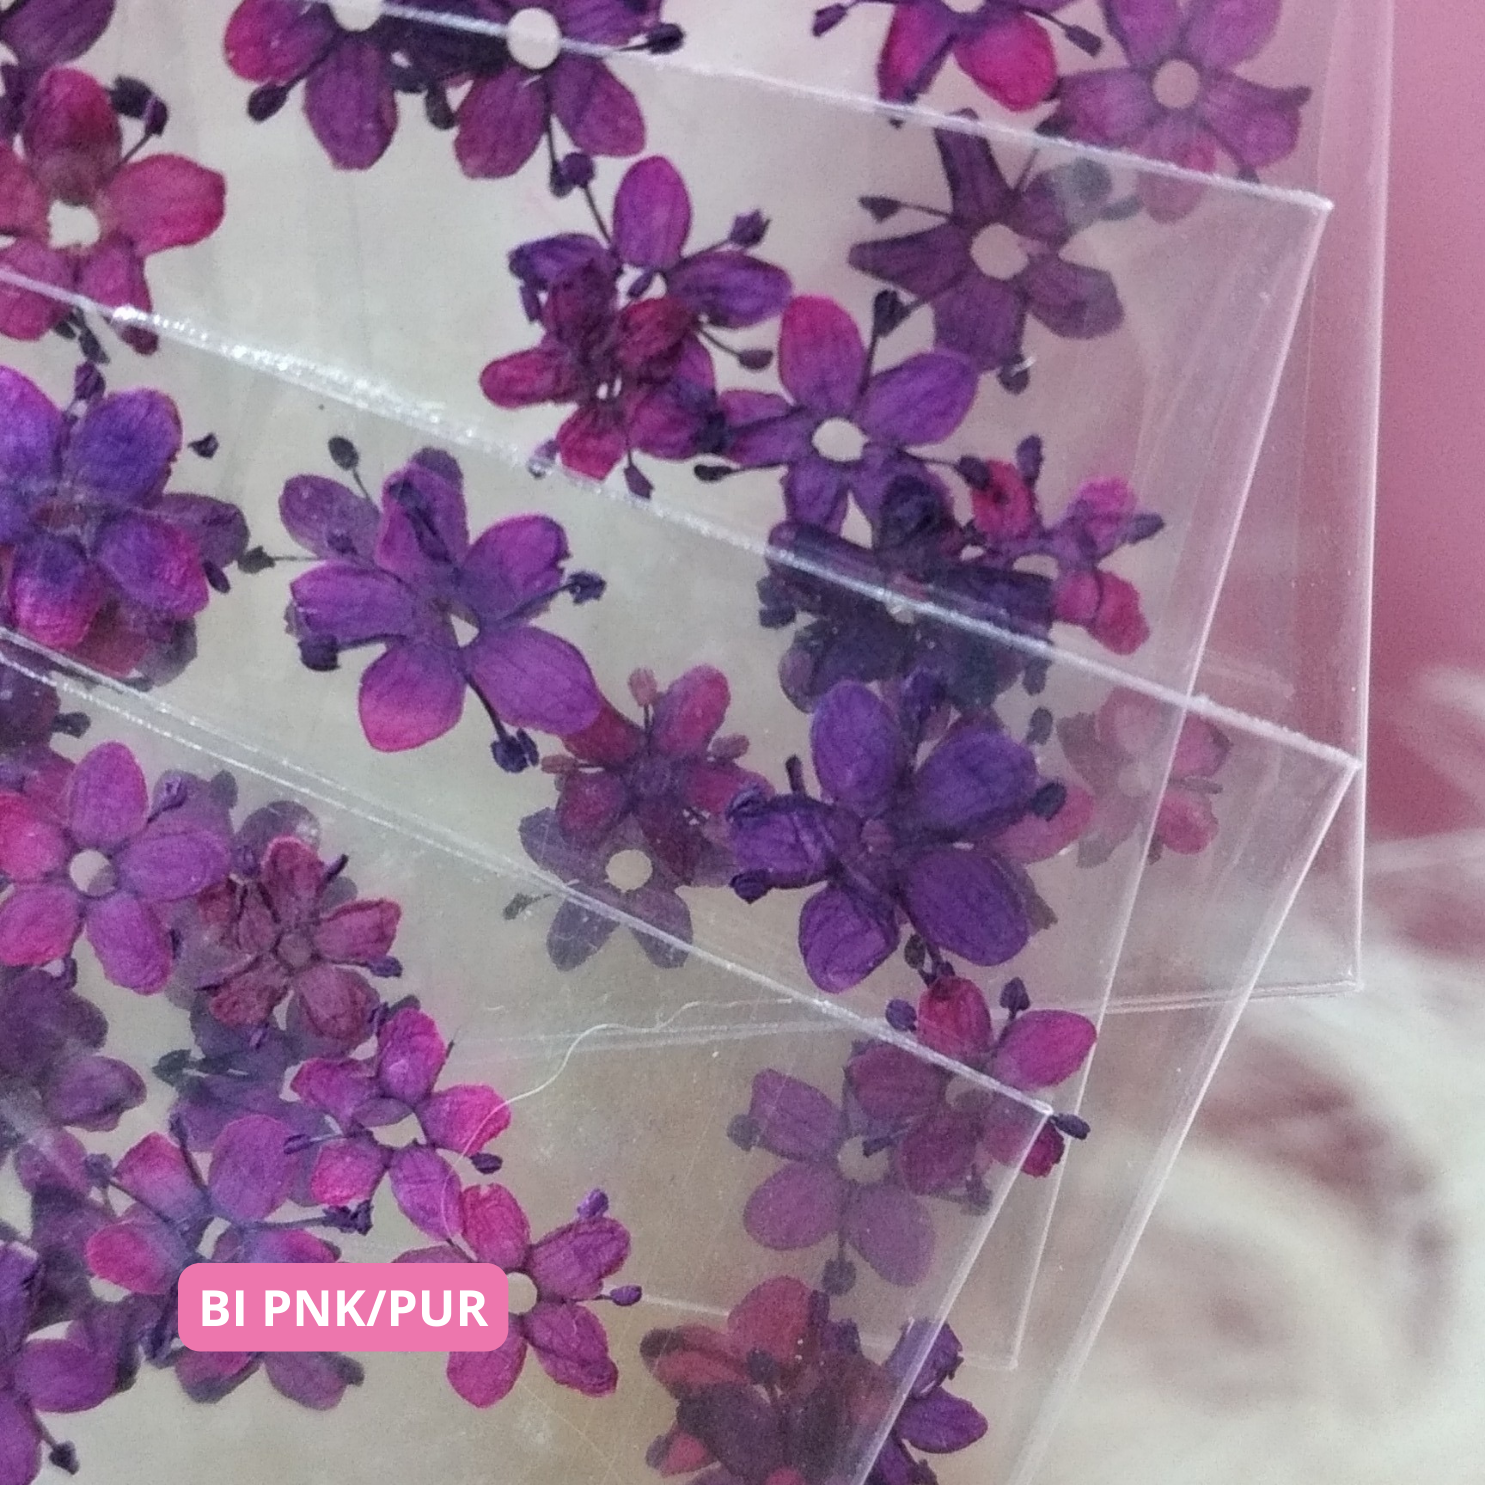 Bi Pnk/Pur Dried Flowers